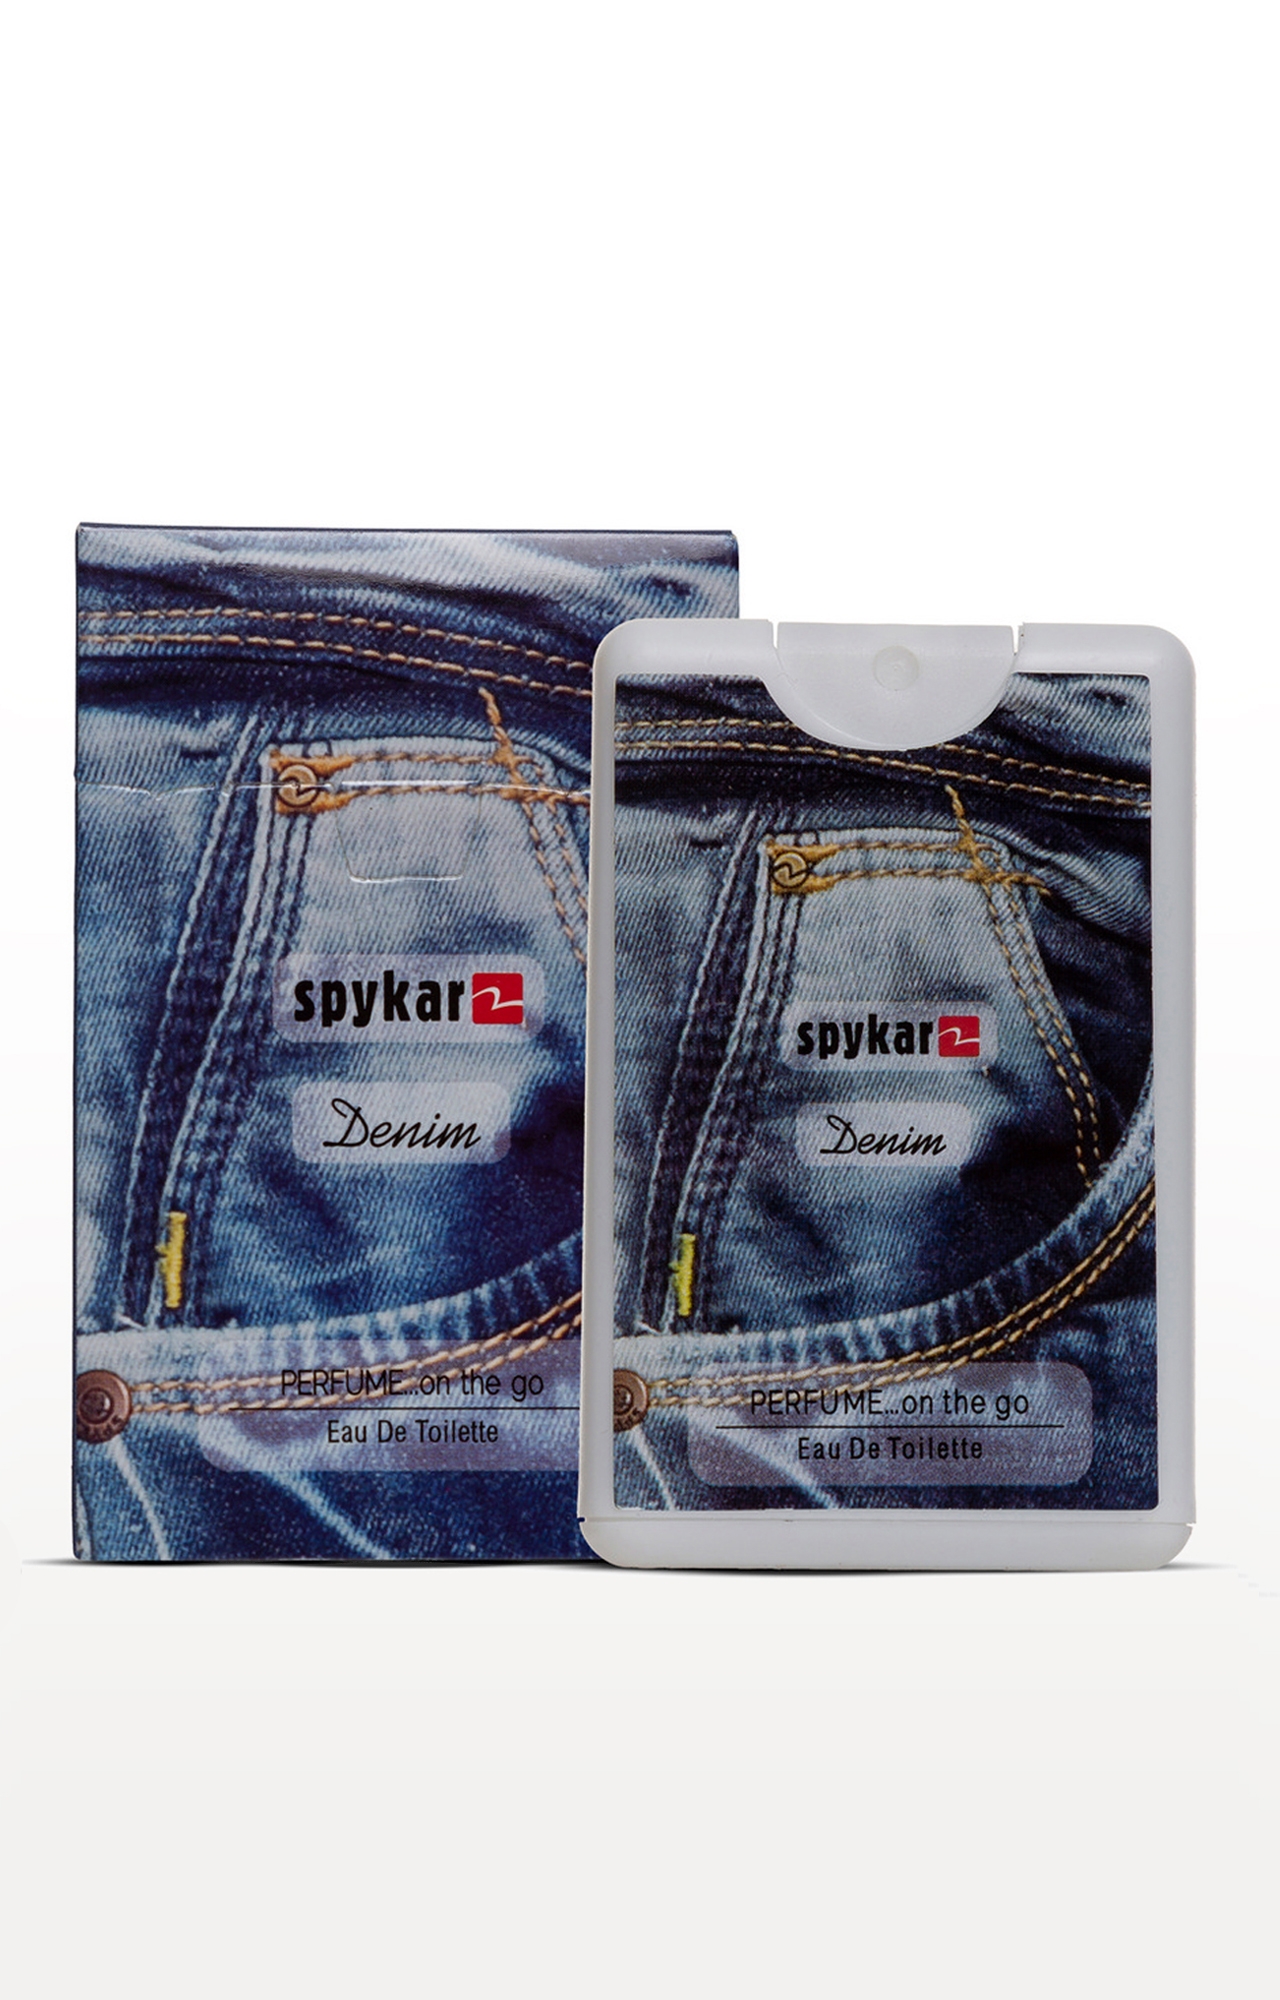 spykar | Spykar Denim Pocket Perfume 0